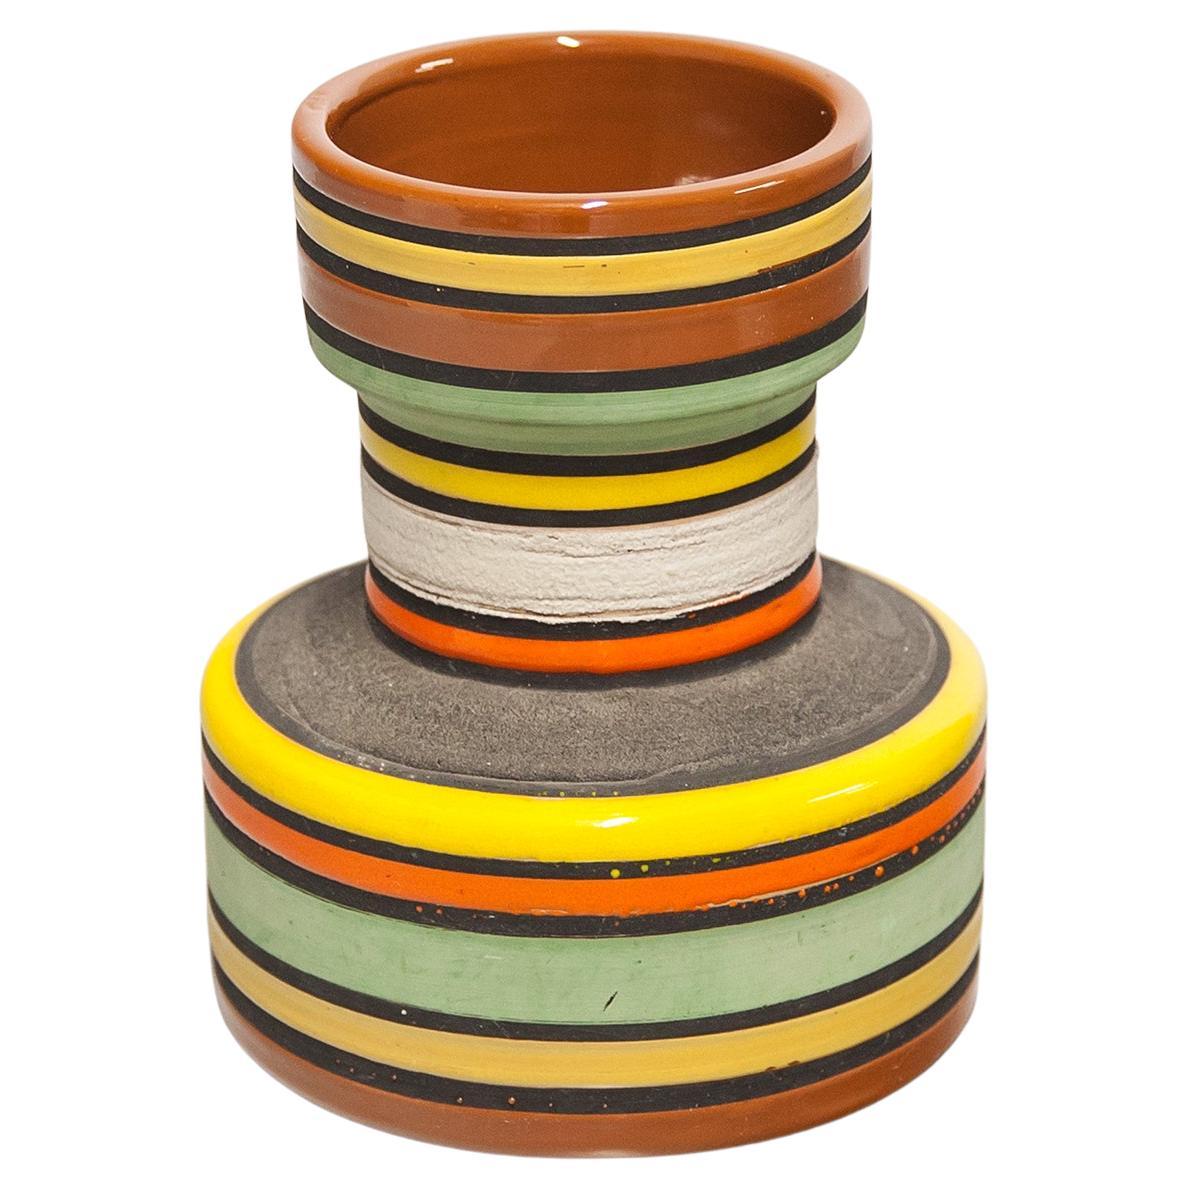 Aldo Londi Bitossi Raymor Keramikvase mit orangefarbenen Streifen, Keramik, Italien 1960er Jahre